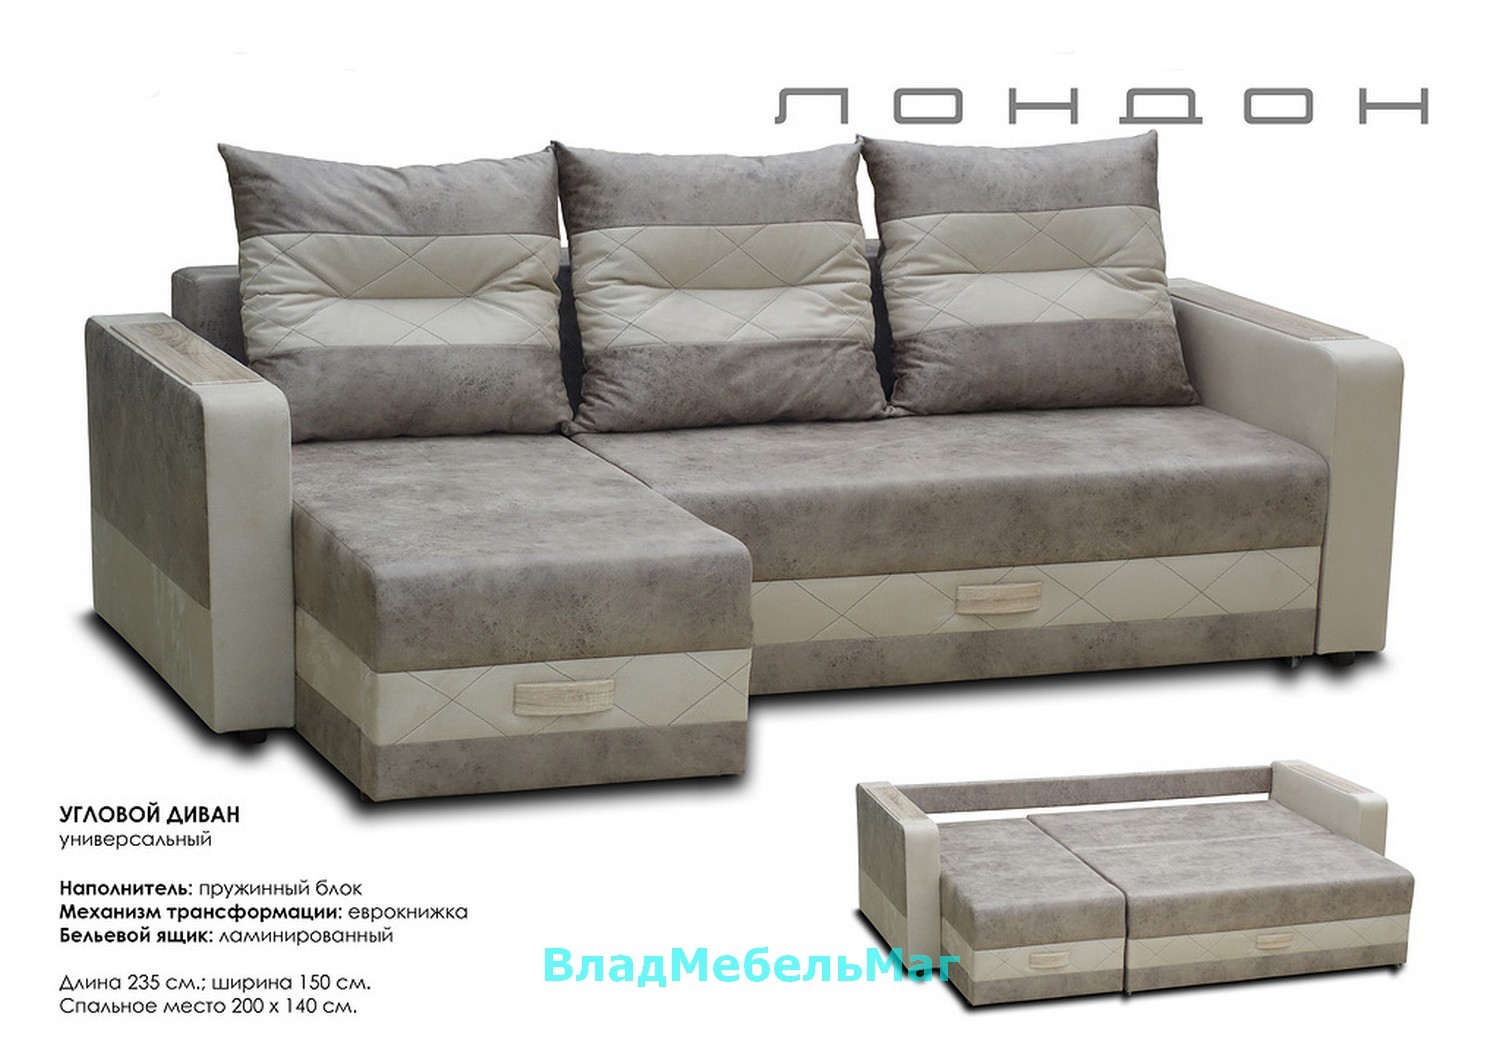 Угловой диван Лондон можно купить онлайн в магазине, id12225